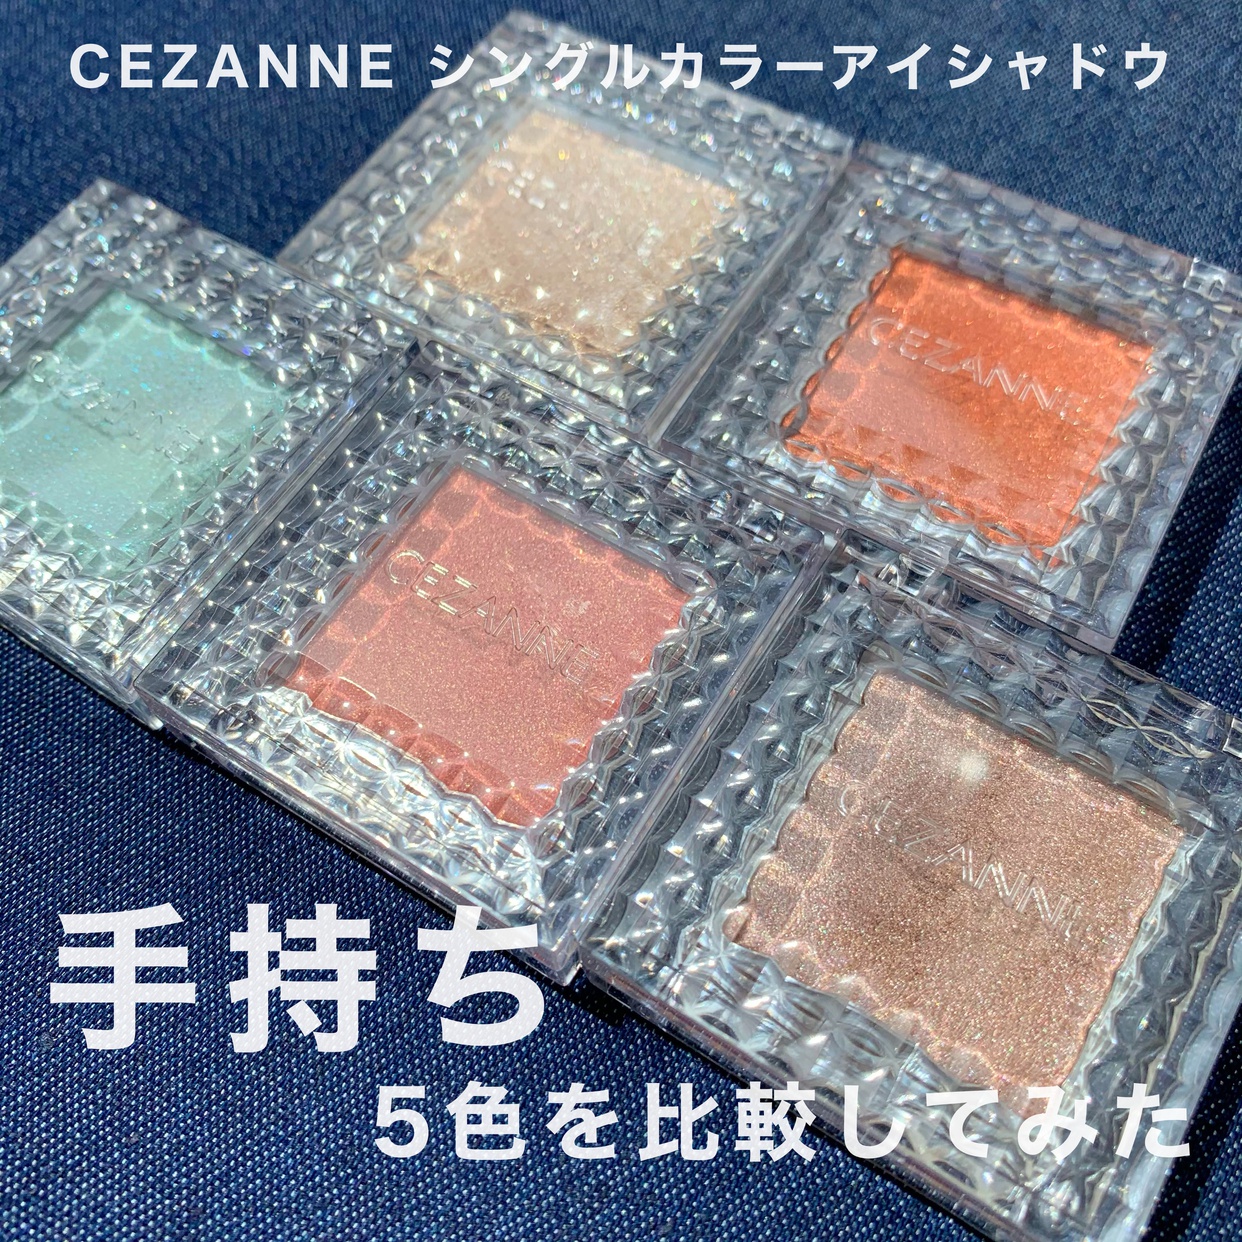 CEZANNE(セザンヌ) シングルカラーアイシャドウの良い点・メリットに関するKeiさんの口コミ画像1